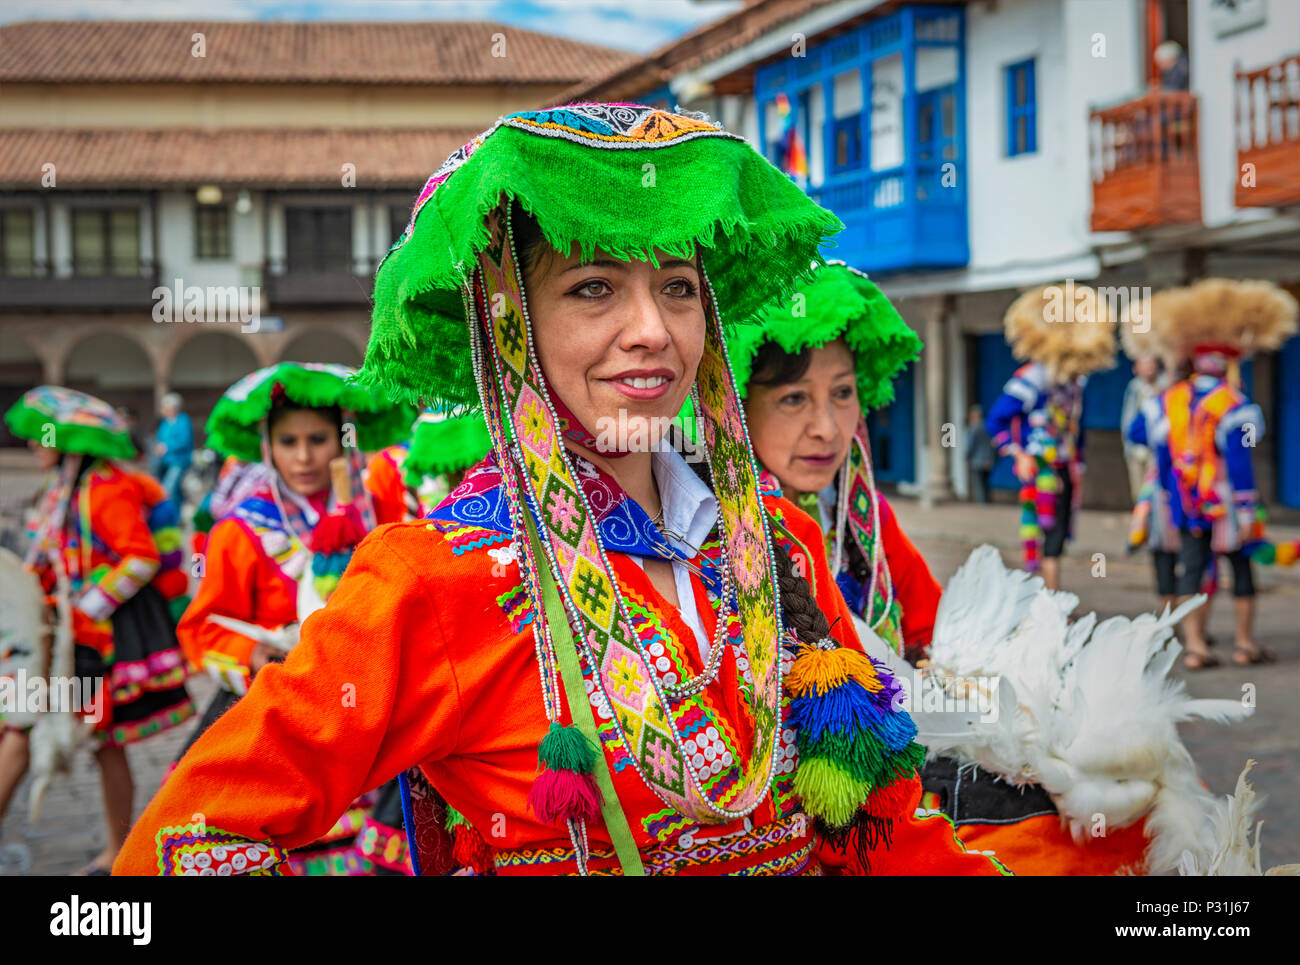 Porträt eines mittleren Alters peruanische Frauen lächelnd in ihrer traditionellen Kleidung für die Inti Raymi Sun Fest Feier in der Stadt Cusco, Peru. Stockfoto